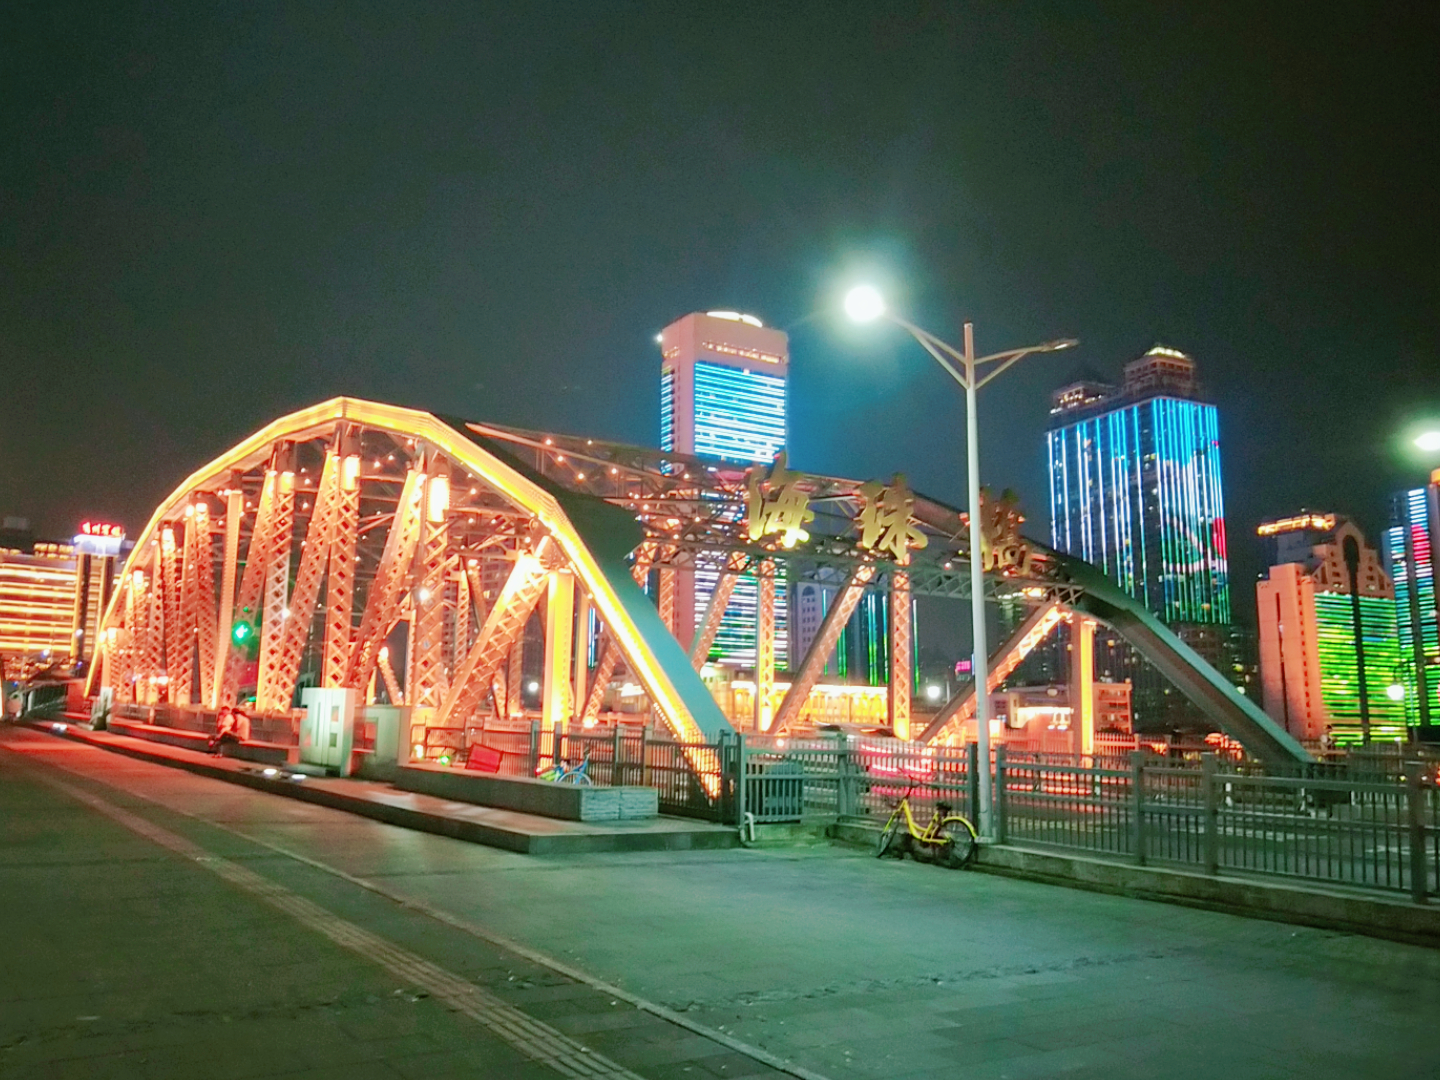 广州第一座跨江桥,夜色浪漫撩人,一览珠江两岸美景